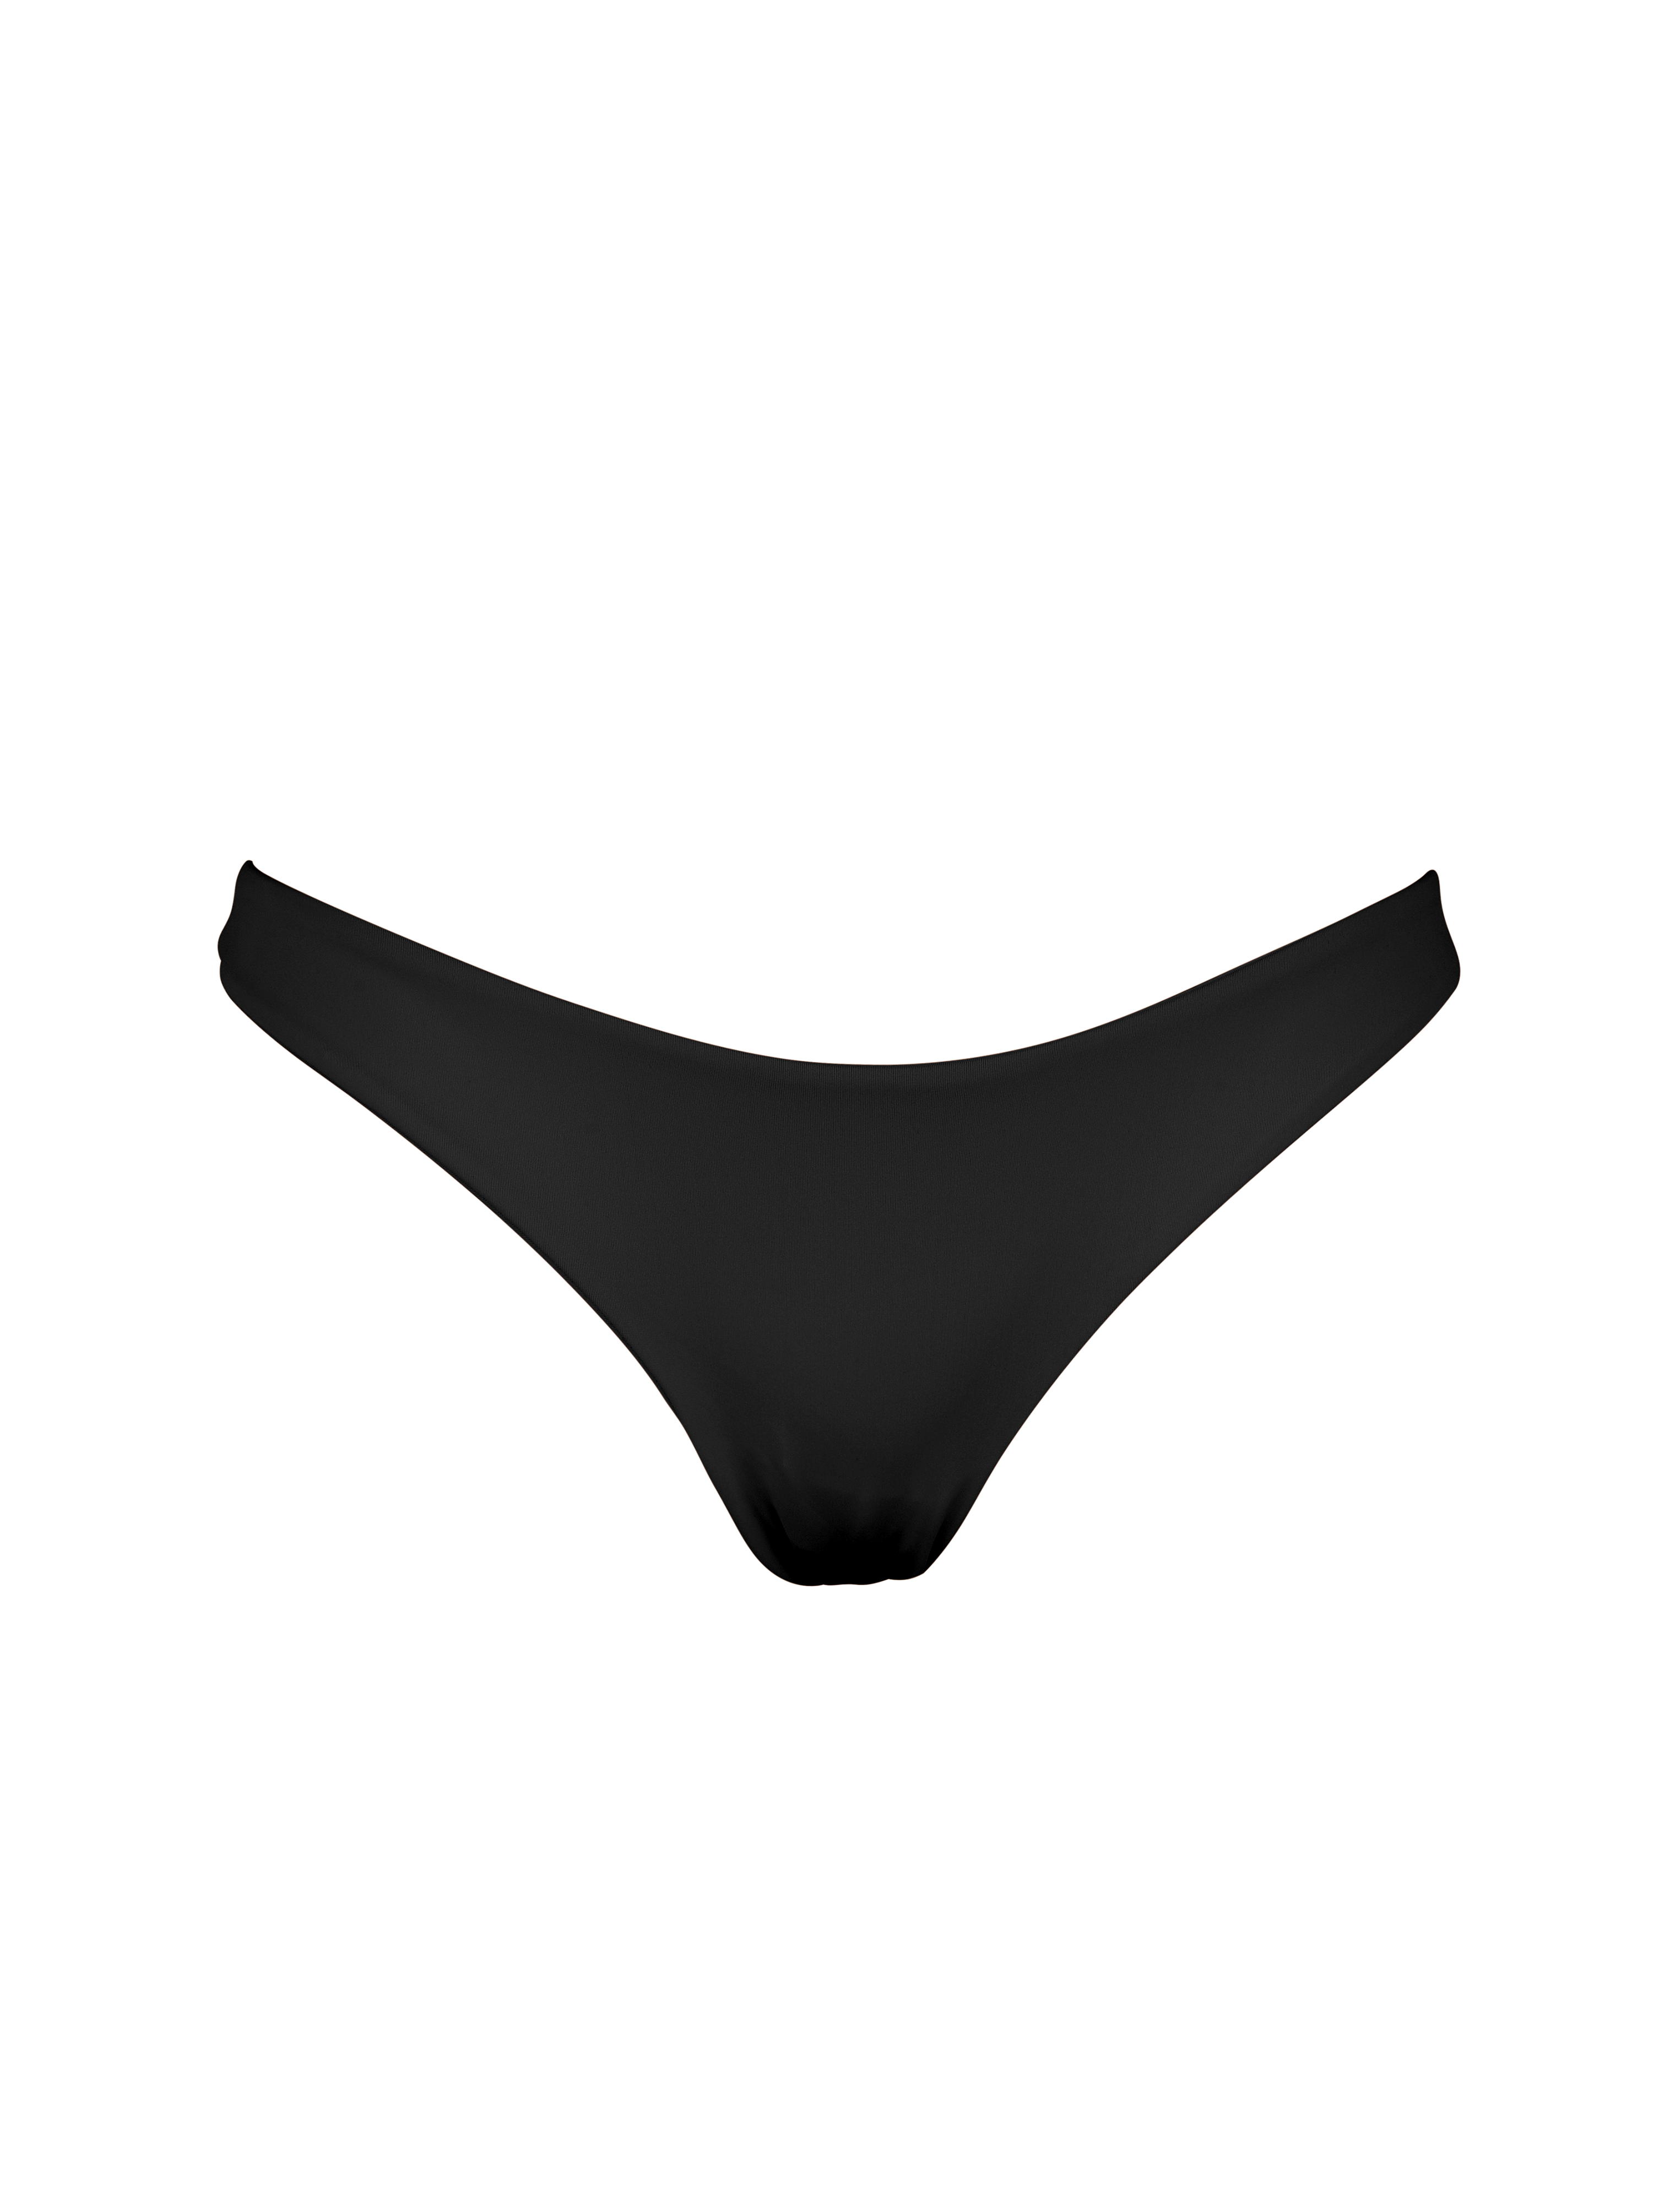 Produktbild Bikinihose schwarz nachhaltig Palmarswimwear